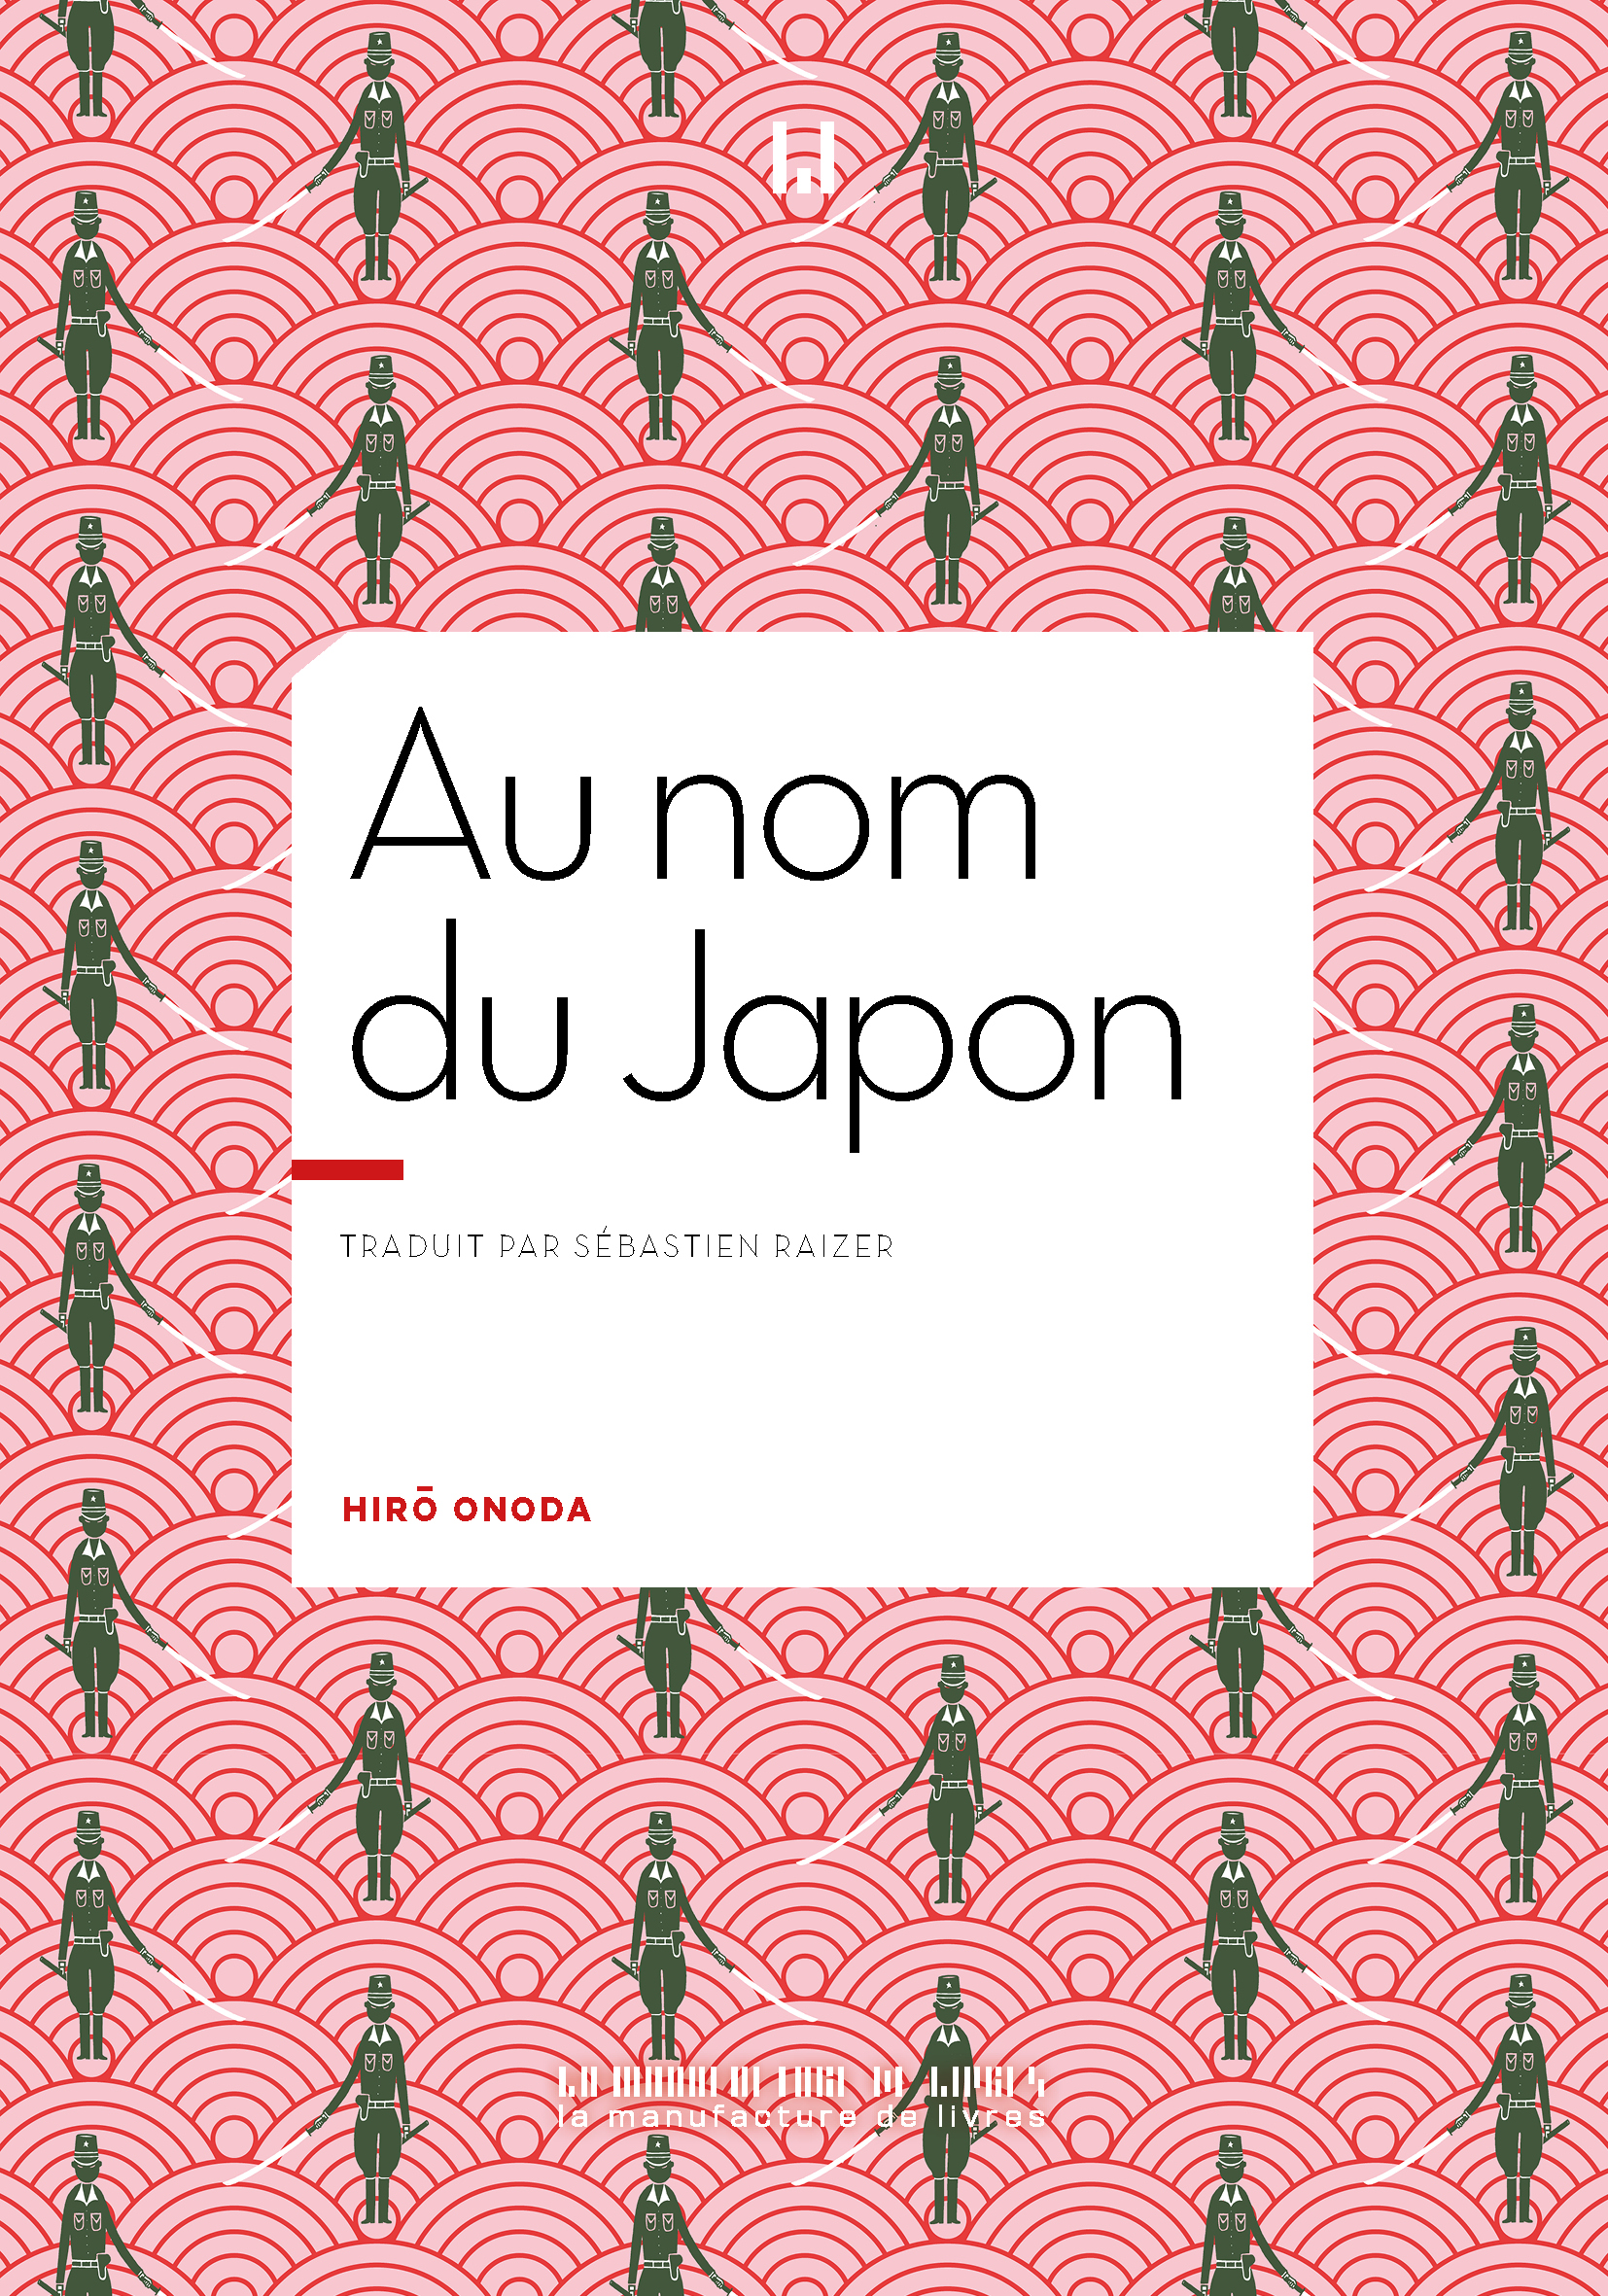 Au nom du Japon de Hirô Onoda paraît chez La manufacture de livres.